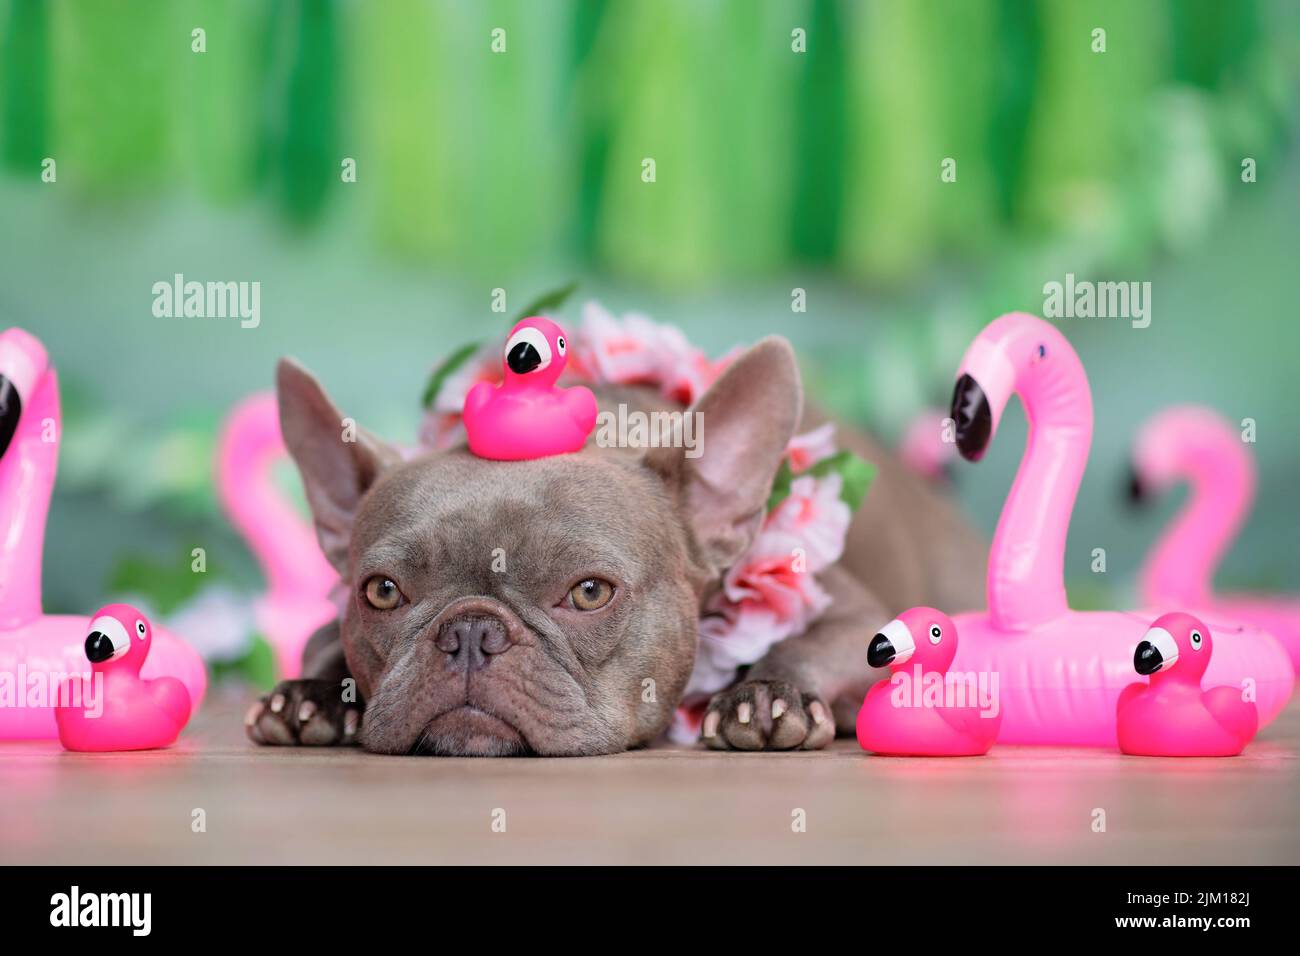 Perro Bulldog francés con flamenco de juguete de goma rosa en la cabeza y guirnalda de flores tropicales frente a fondo verde Foto de stock